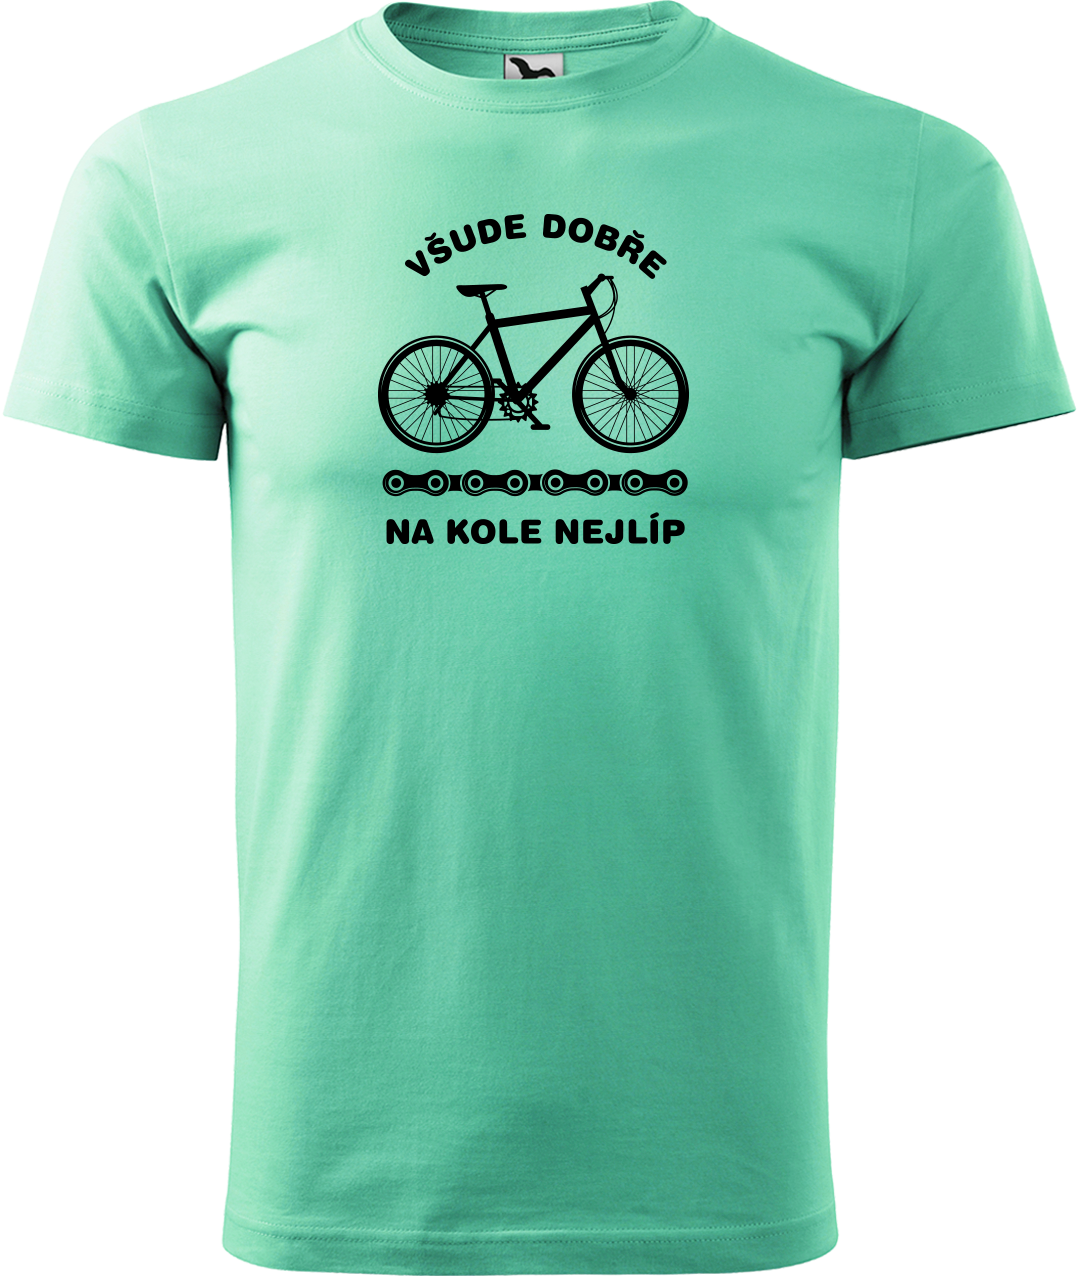 Pánské tričko s kolem - Všude dobře, na kole nejlíp Velikost: M, Barva: Mátová (95)